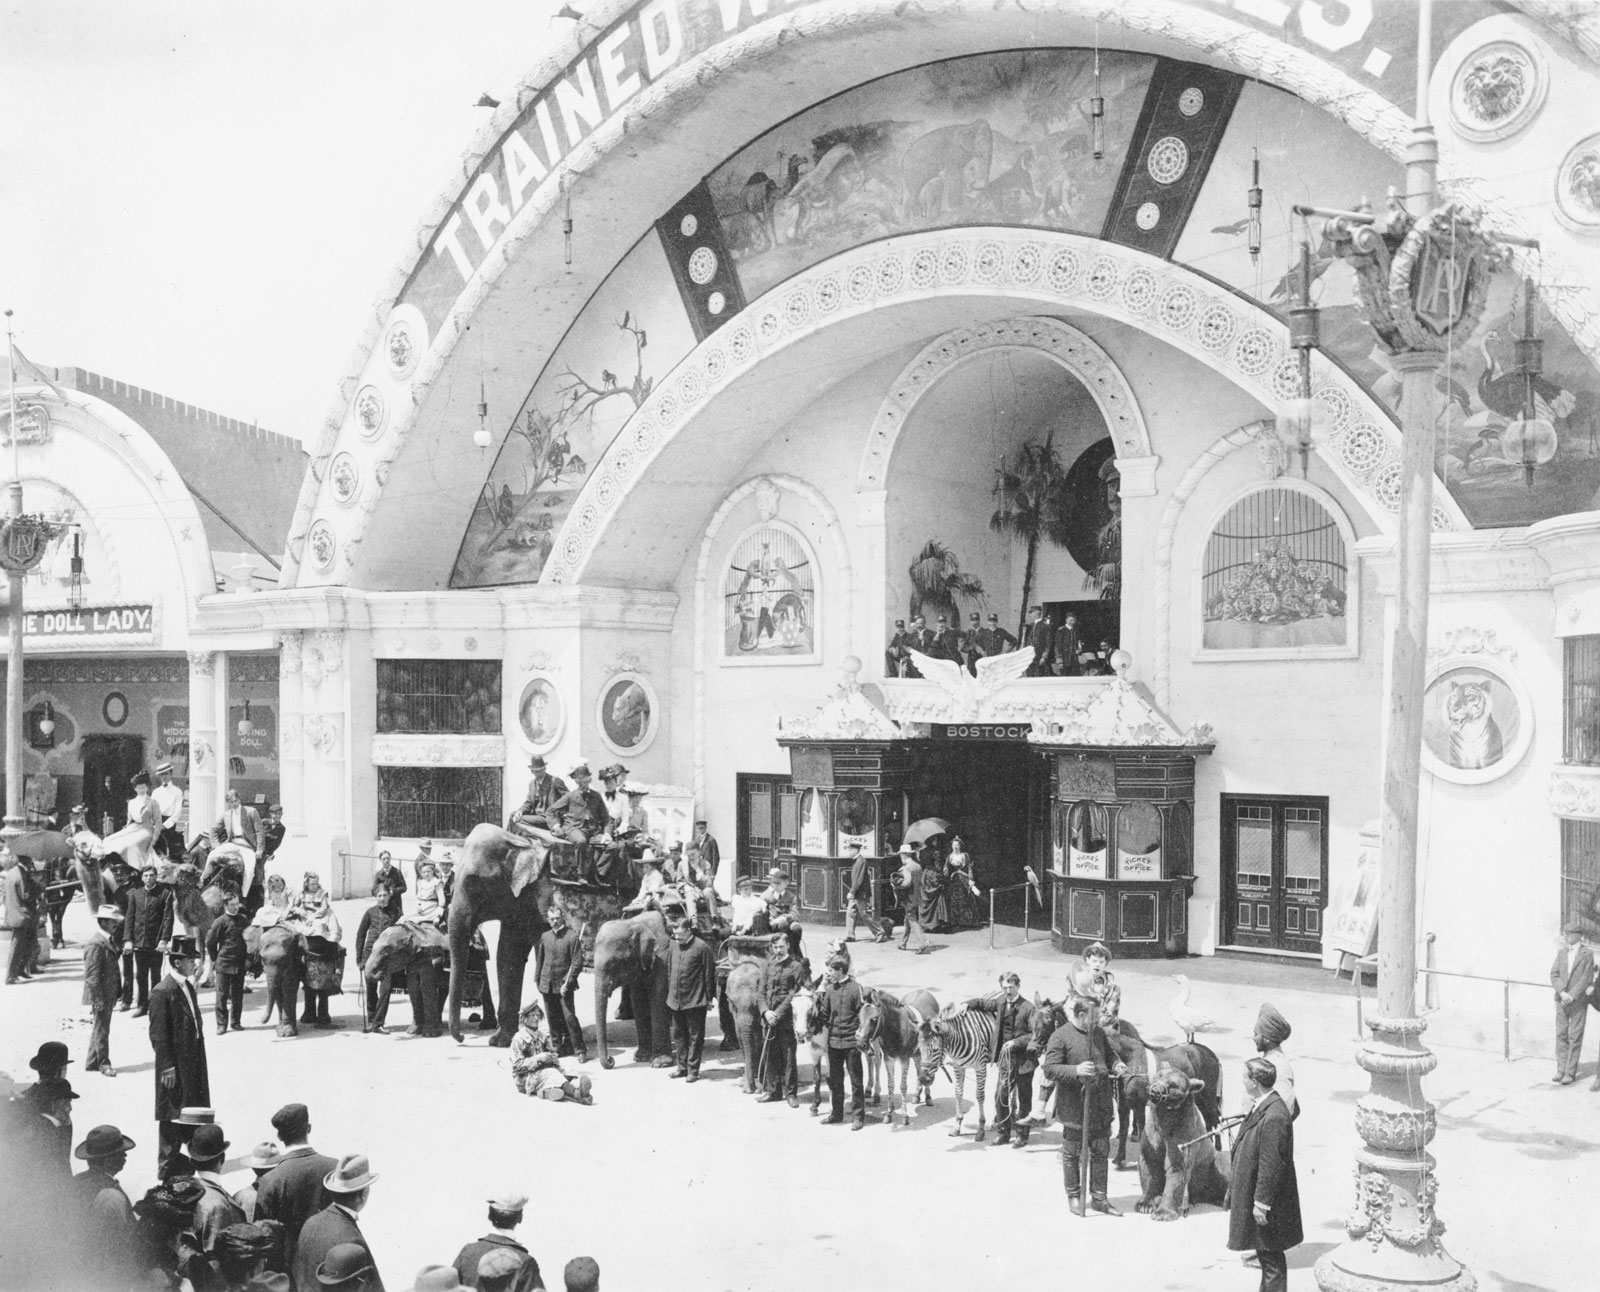 Всемирная выставка 1893г. года Чикаго (World’s Columbian Exposition)